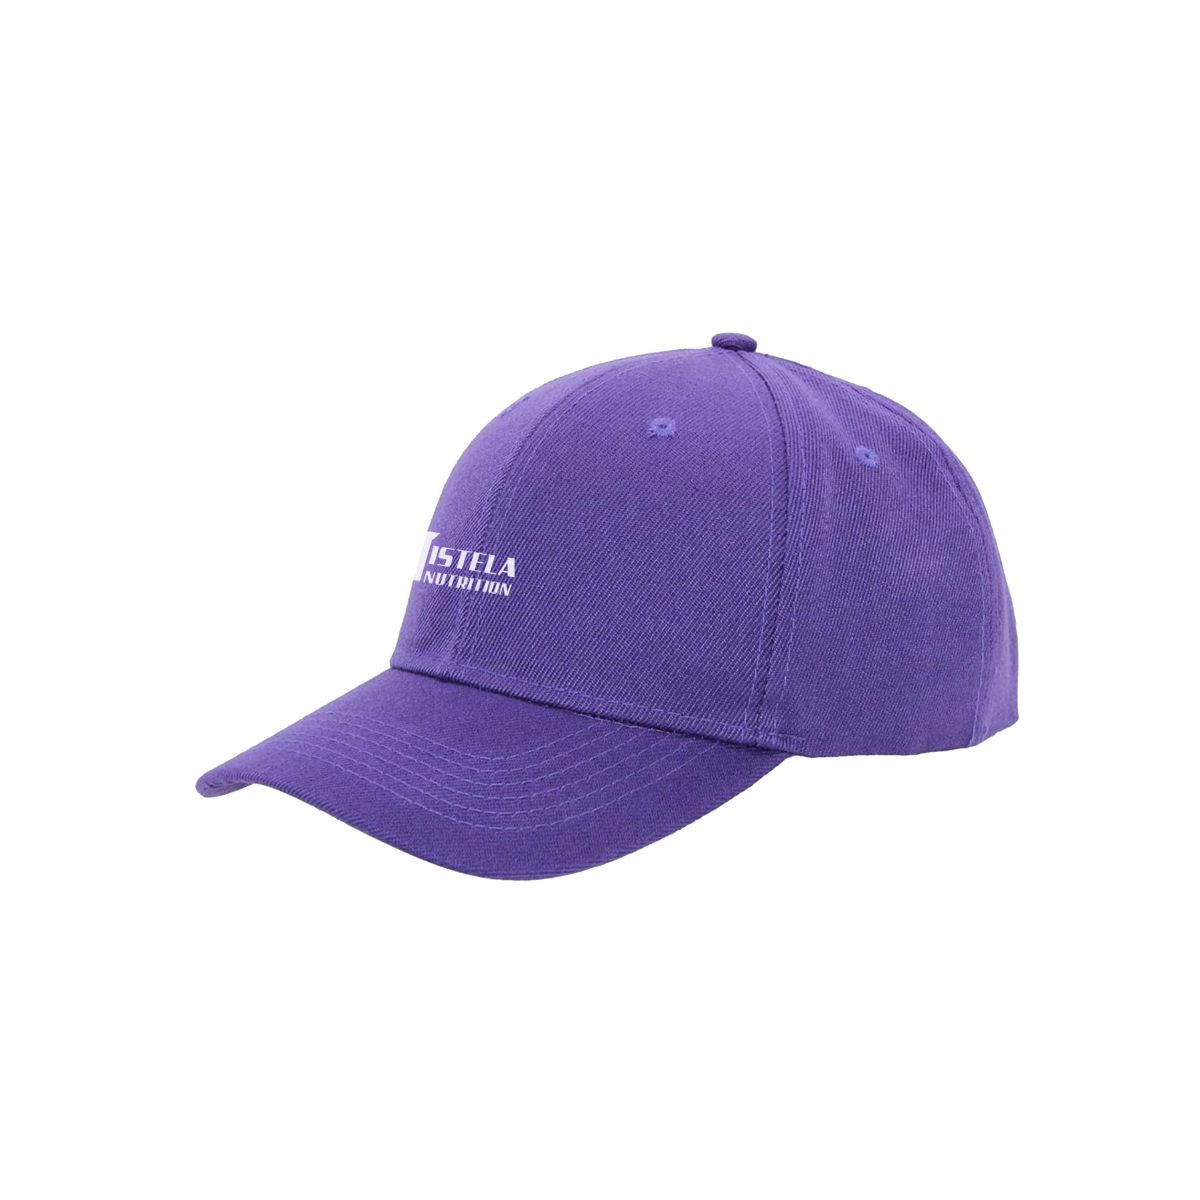 Purple sun hat